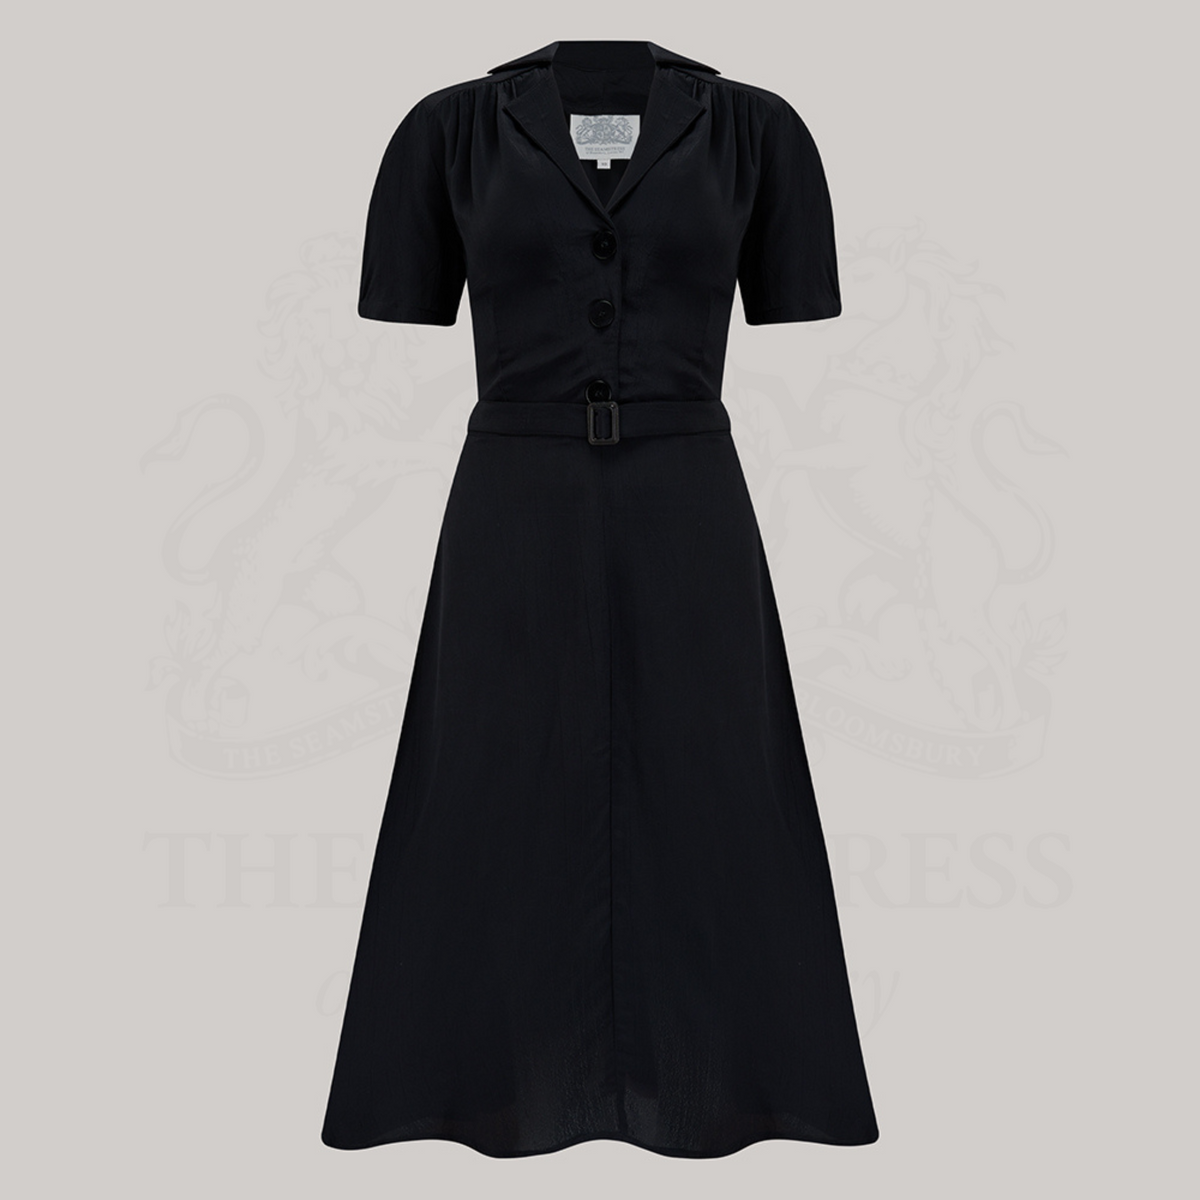 Lisa Shirtwaister Dress in Liquorice Black